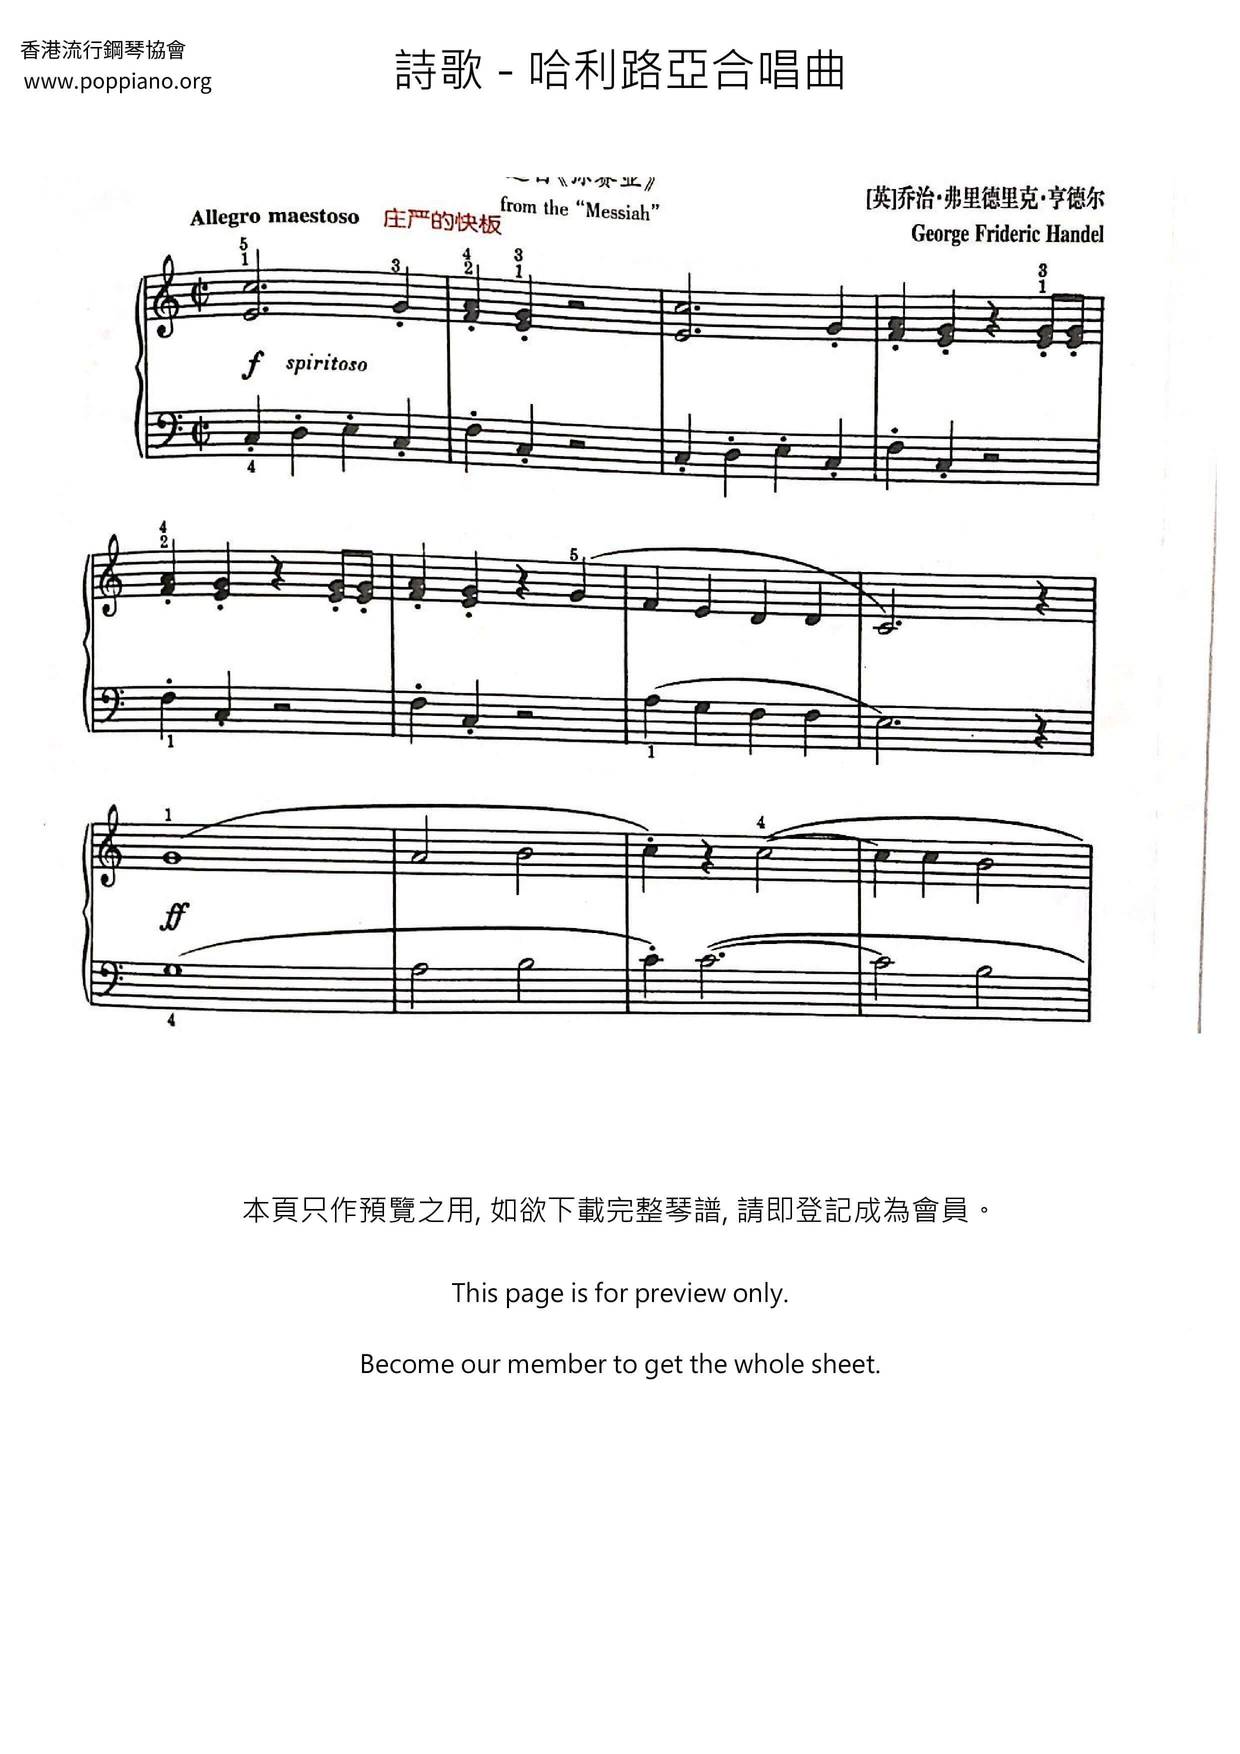 詩歌 哈利路亞合唱曲 ピアノ譜pdf 香港ポップピアノ協会 無料pdf楽譜ダウンロード Gakufu